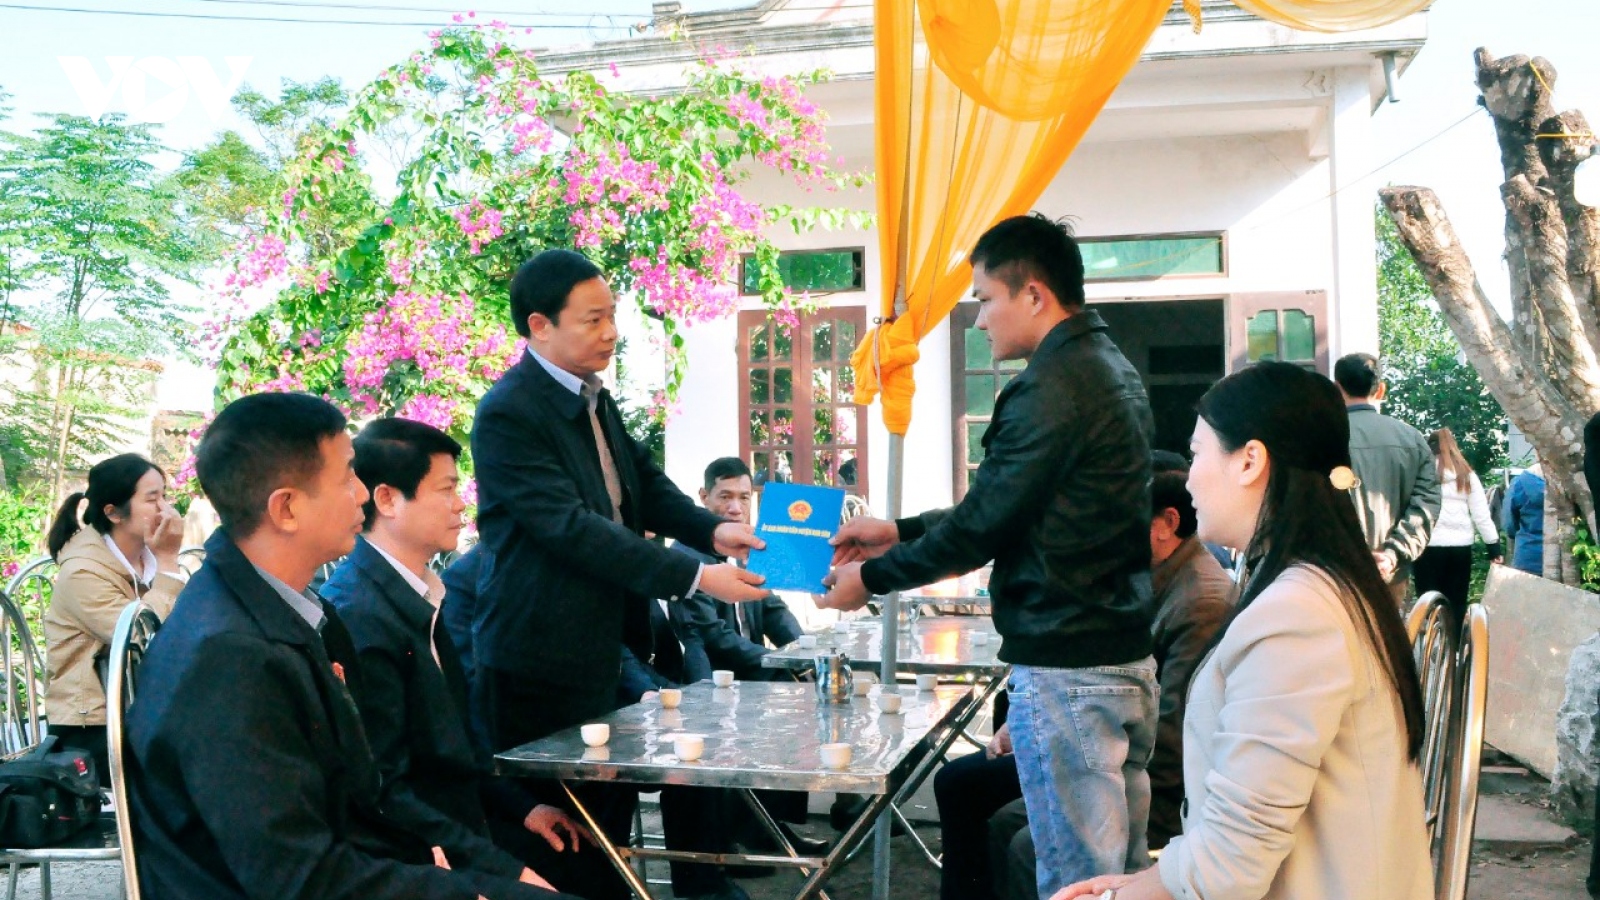 Hỗ trợ gia đình nạn nhân sau vụ nổ khiến 2 người chết ở Kim Sơn, Ninh Bình